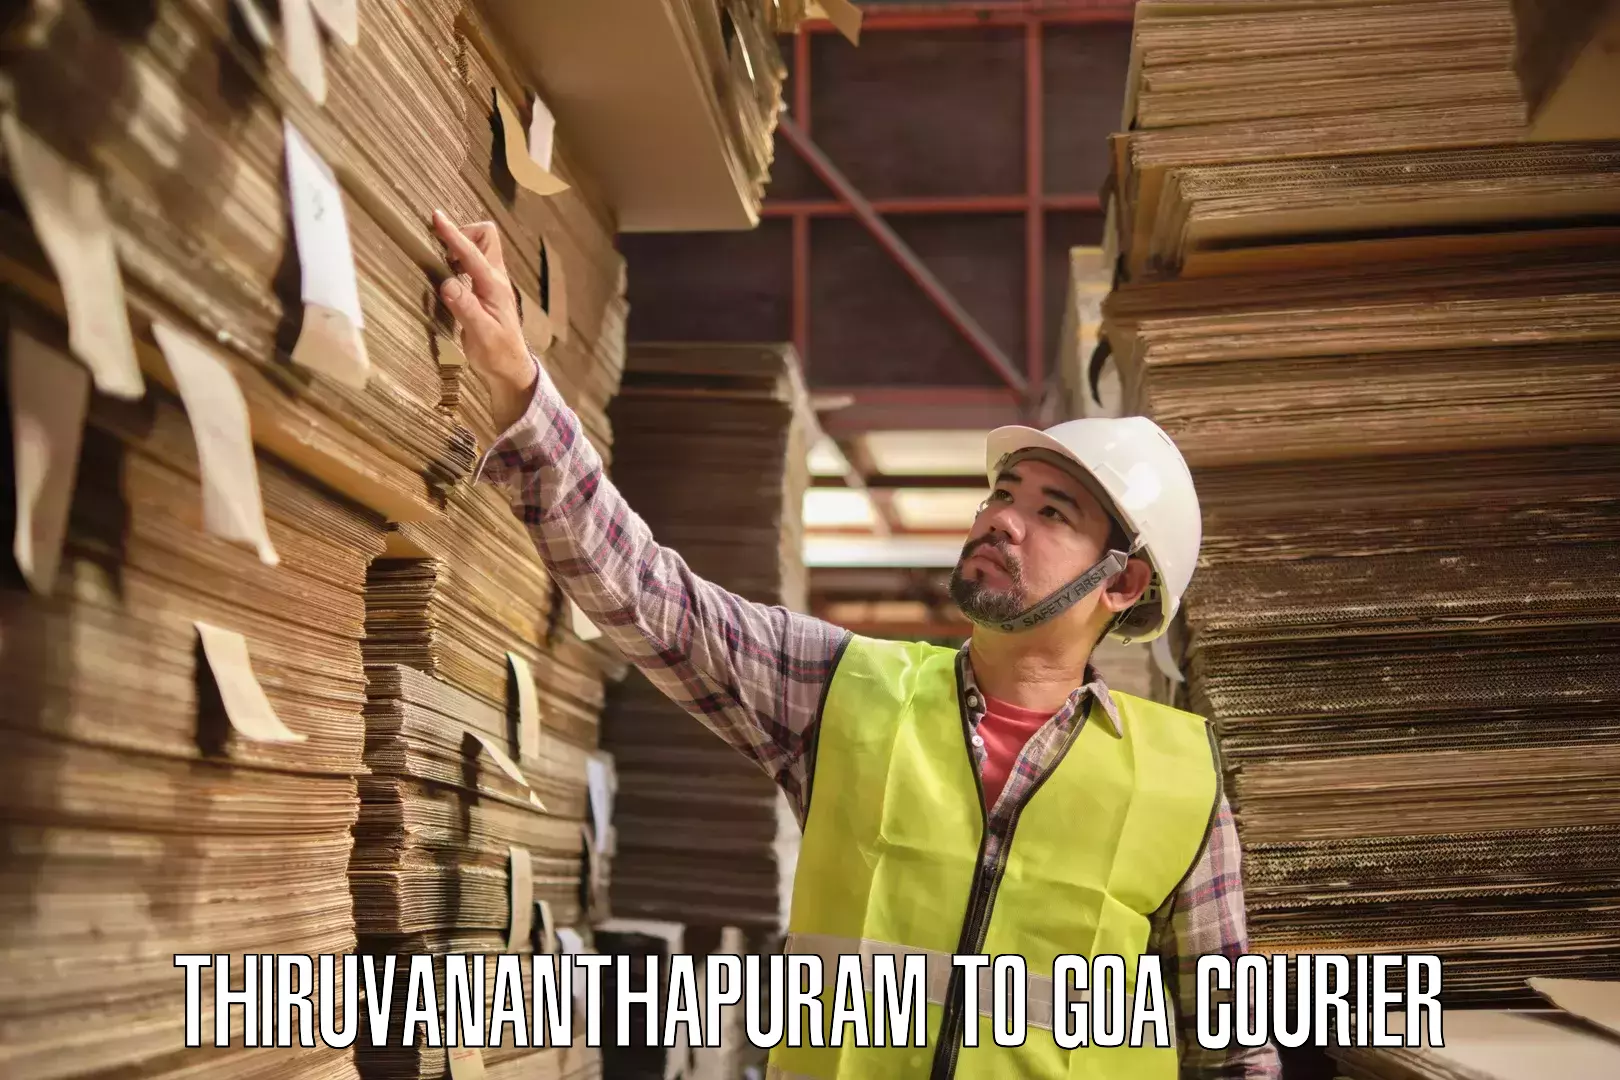 Full-service courier options Thiruvananthapuram to Vasco da Gama